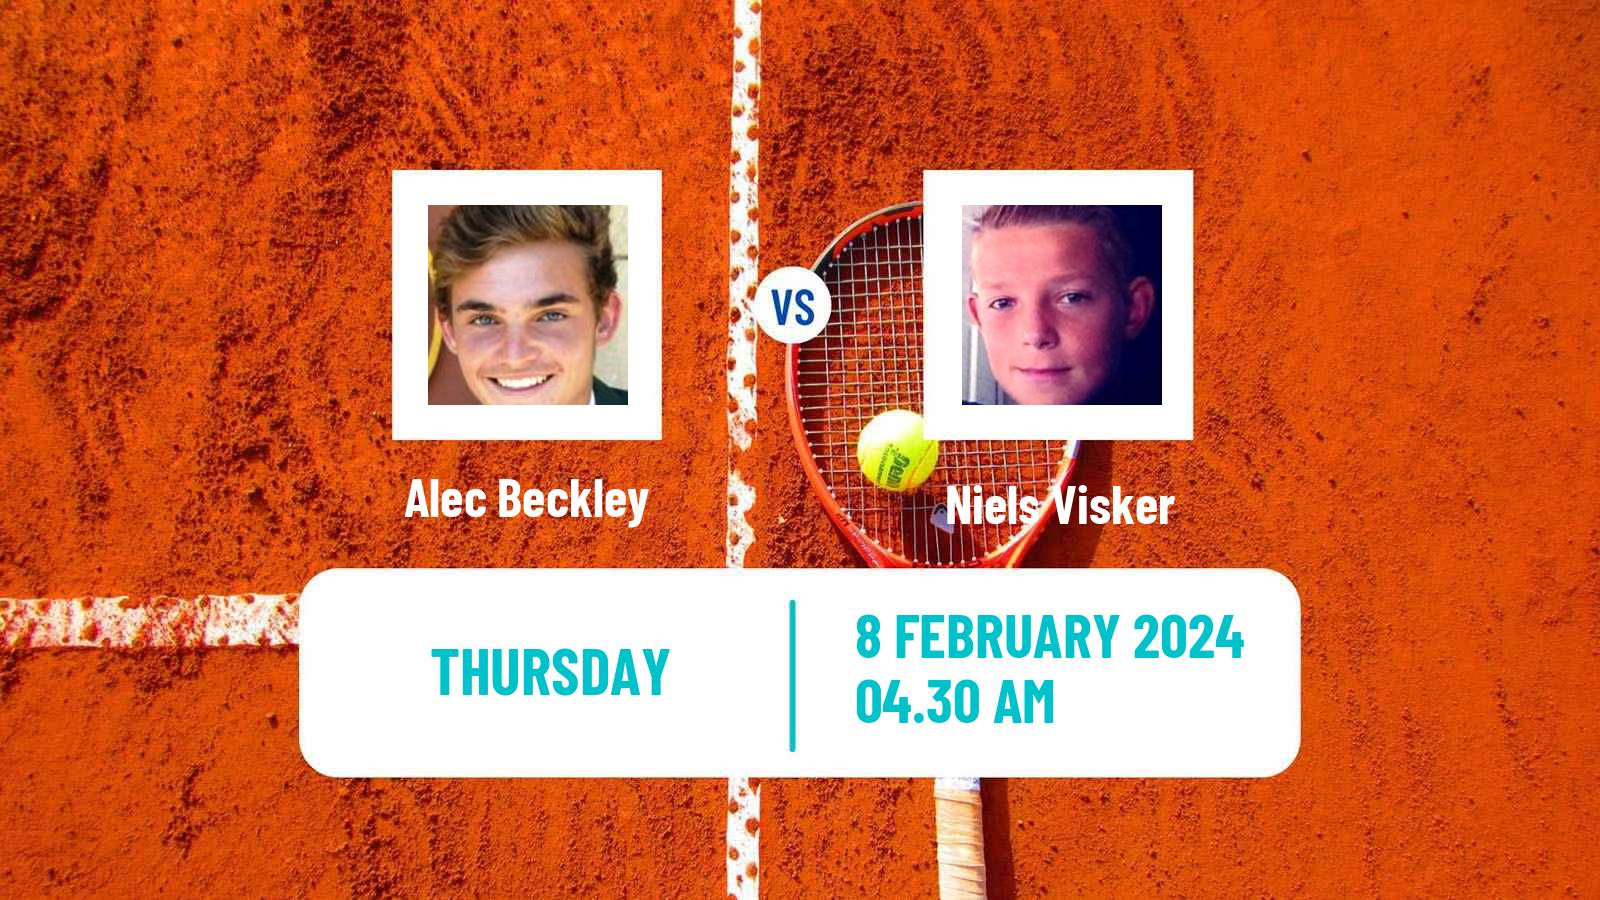 Tennis ITF M15 Sharm Elsheikh 2 Men Alec Beckley - Niels Visker